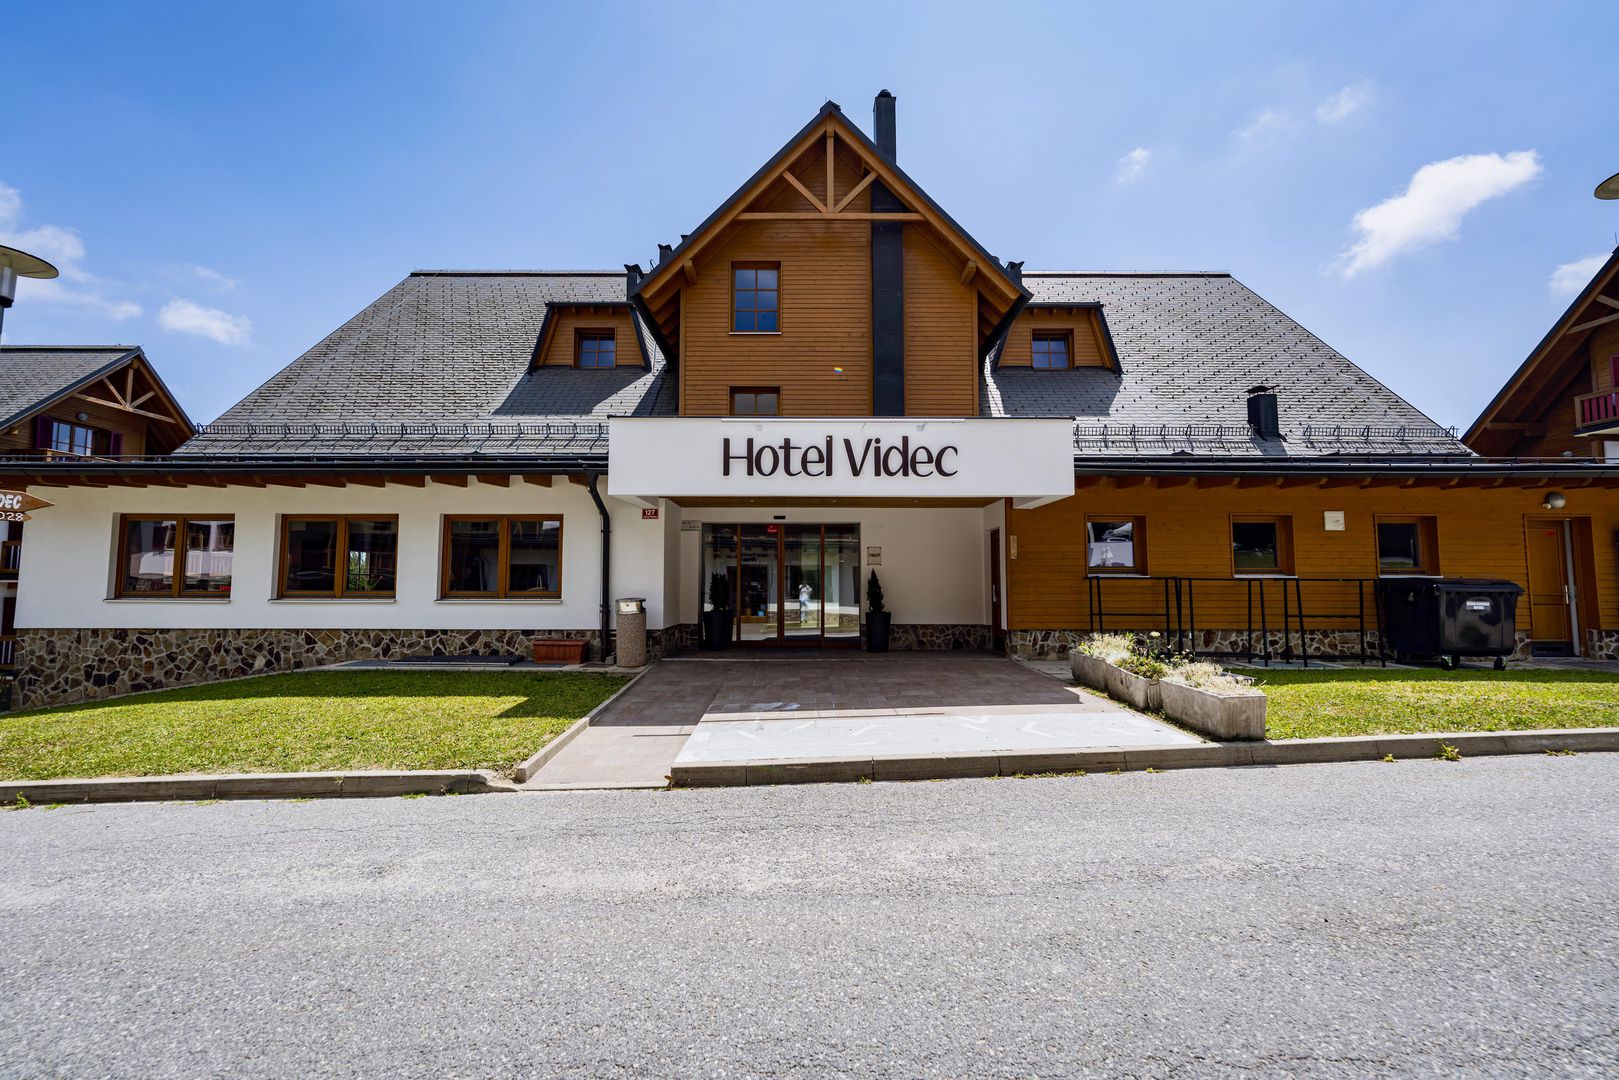 Pohorje Village Resort - Forest Hotel Videc in Maribor, Pohorje Village Resort - Forest Hotel Videc / Slowenien